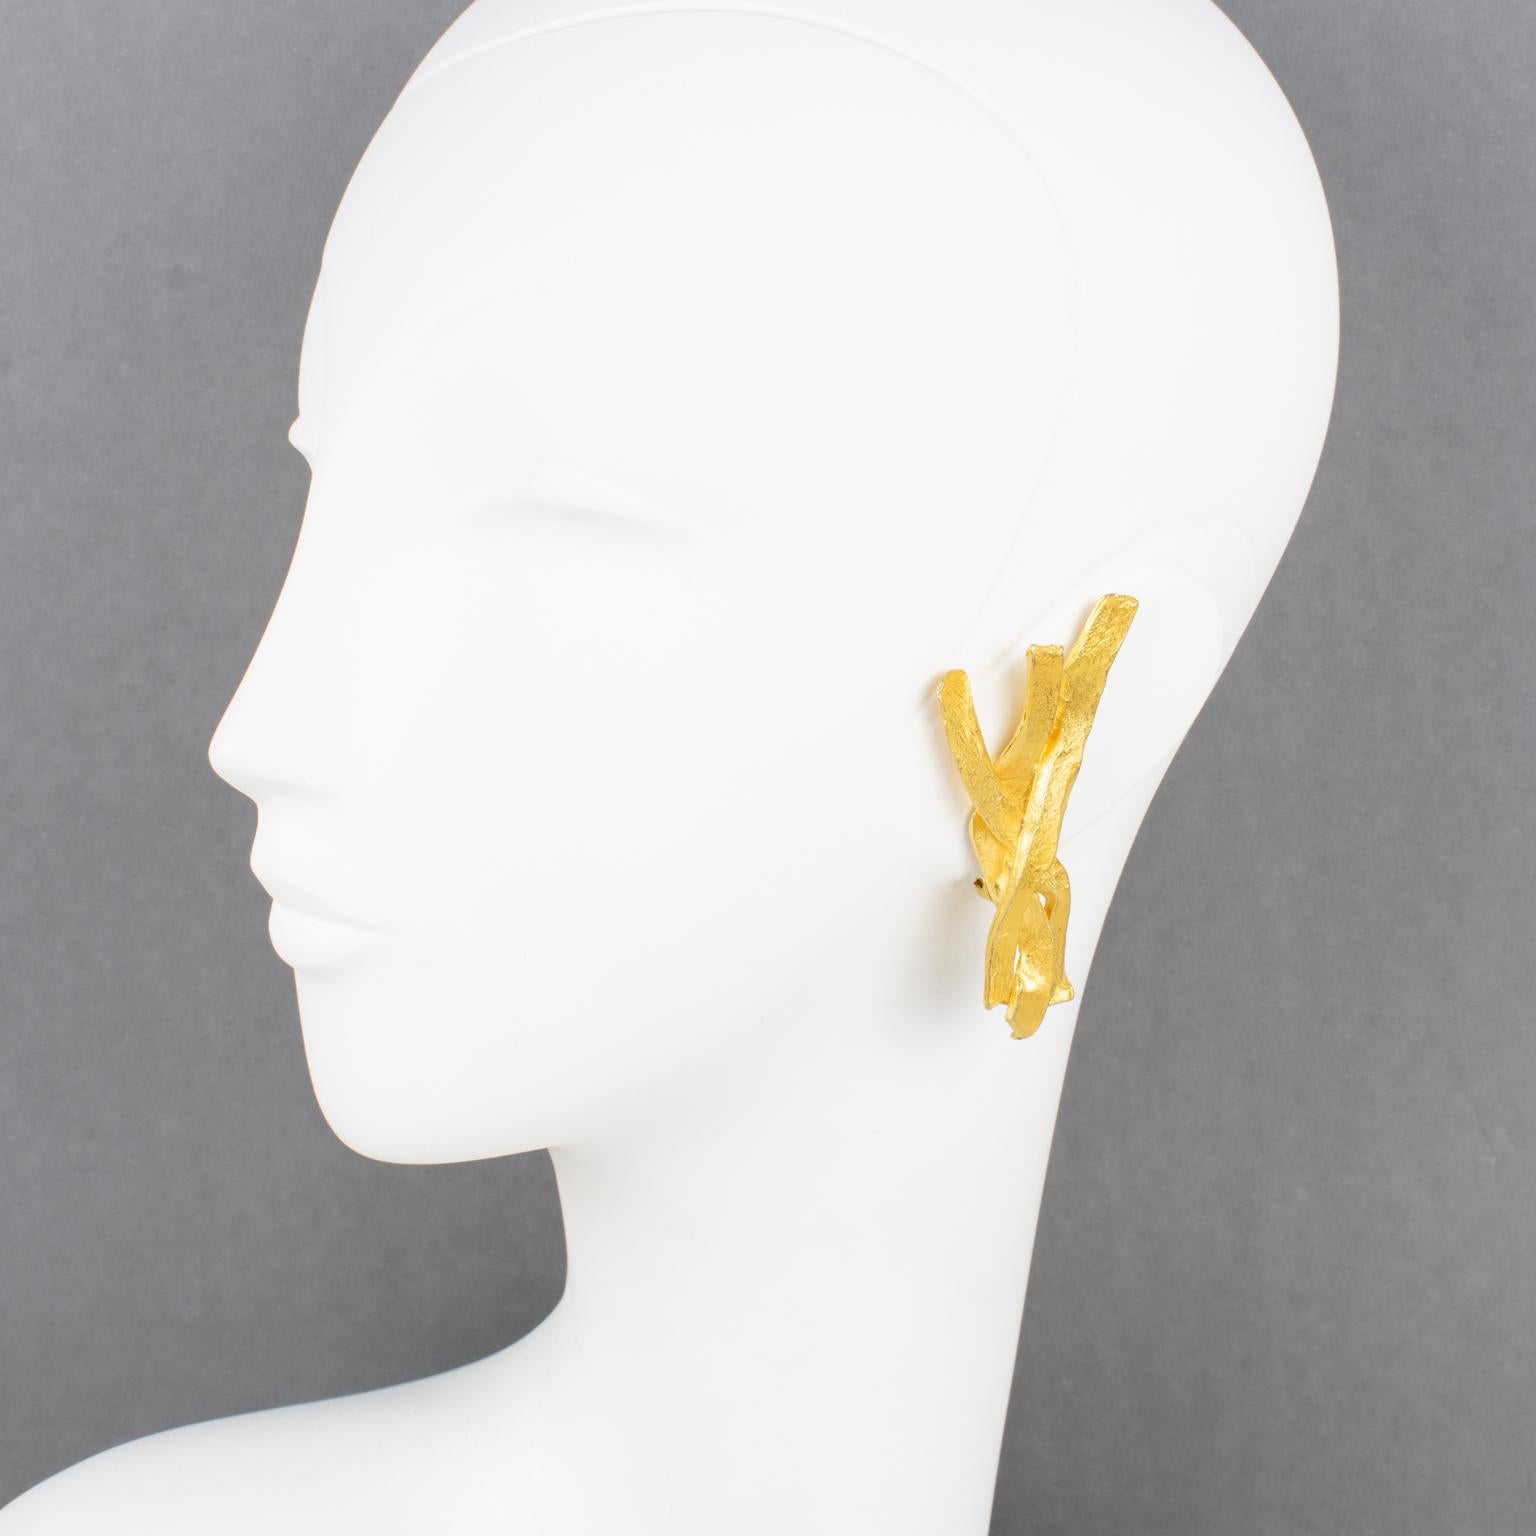 Ces élégantes boucles d'oreilles clipsables Edouard Rambaud Paris présentent un design dimensionnel sculpté en forme de branches stylisées en métal doré texturé avec un toucher fait main et un aspect satiné. Ils sont signés avec le logo du créateur